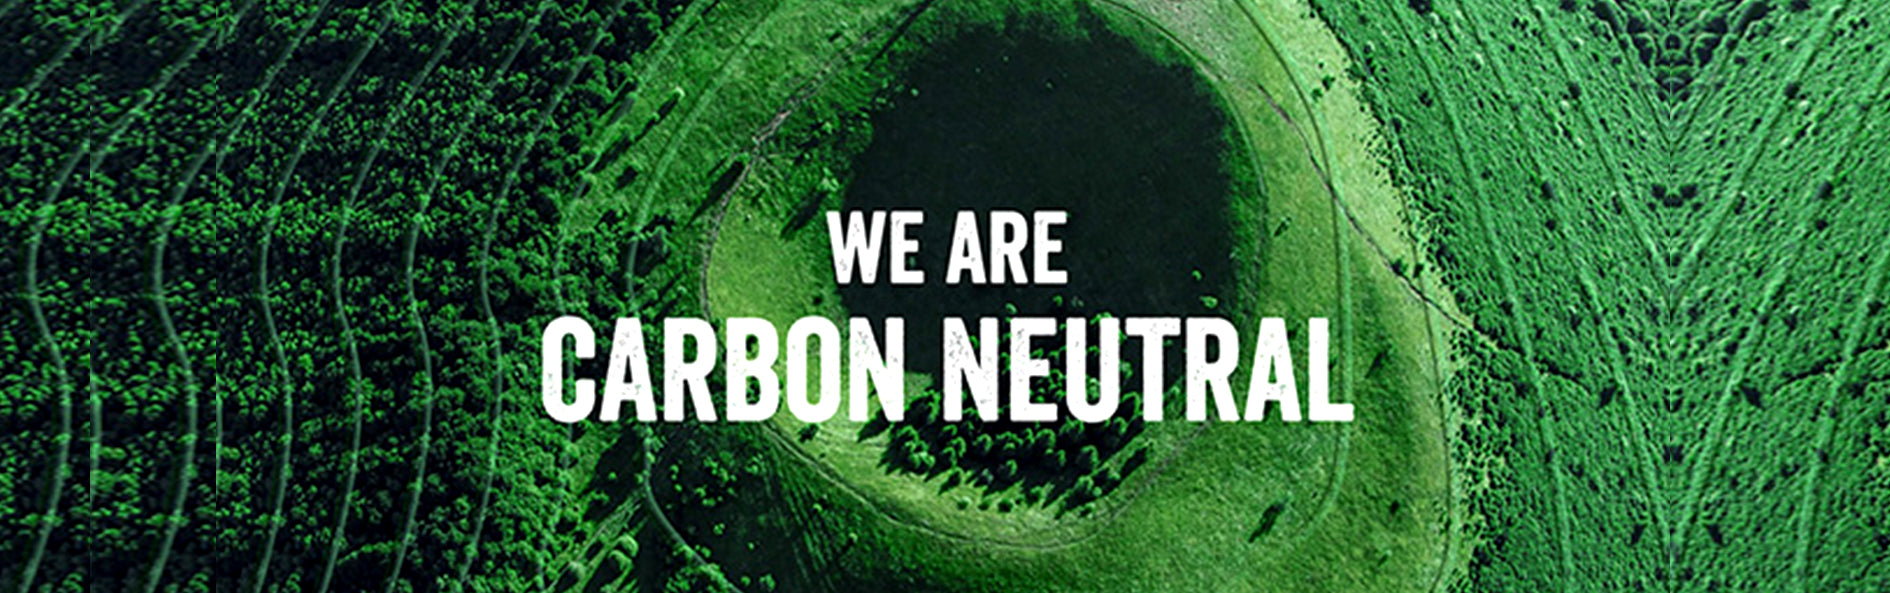 Our Carbon-Neutral Journey